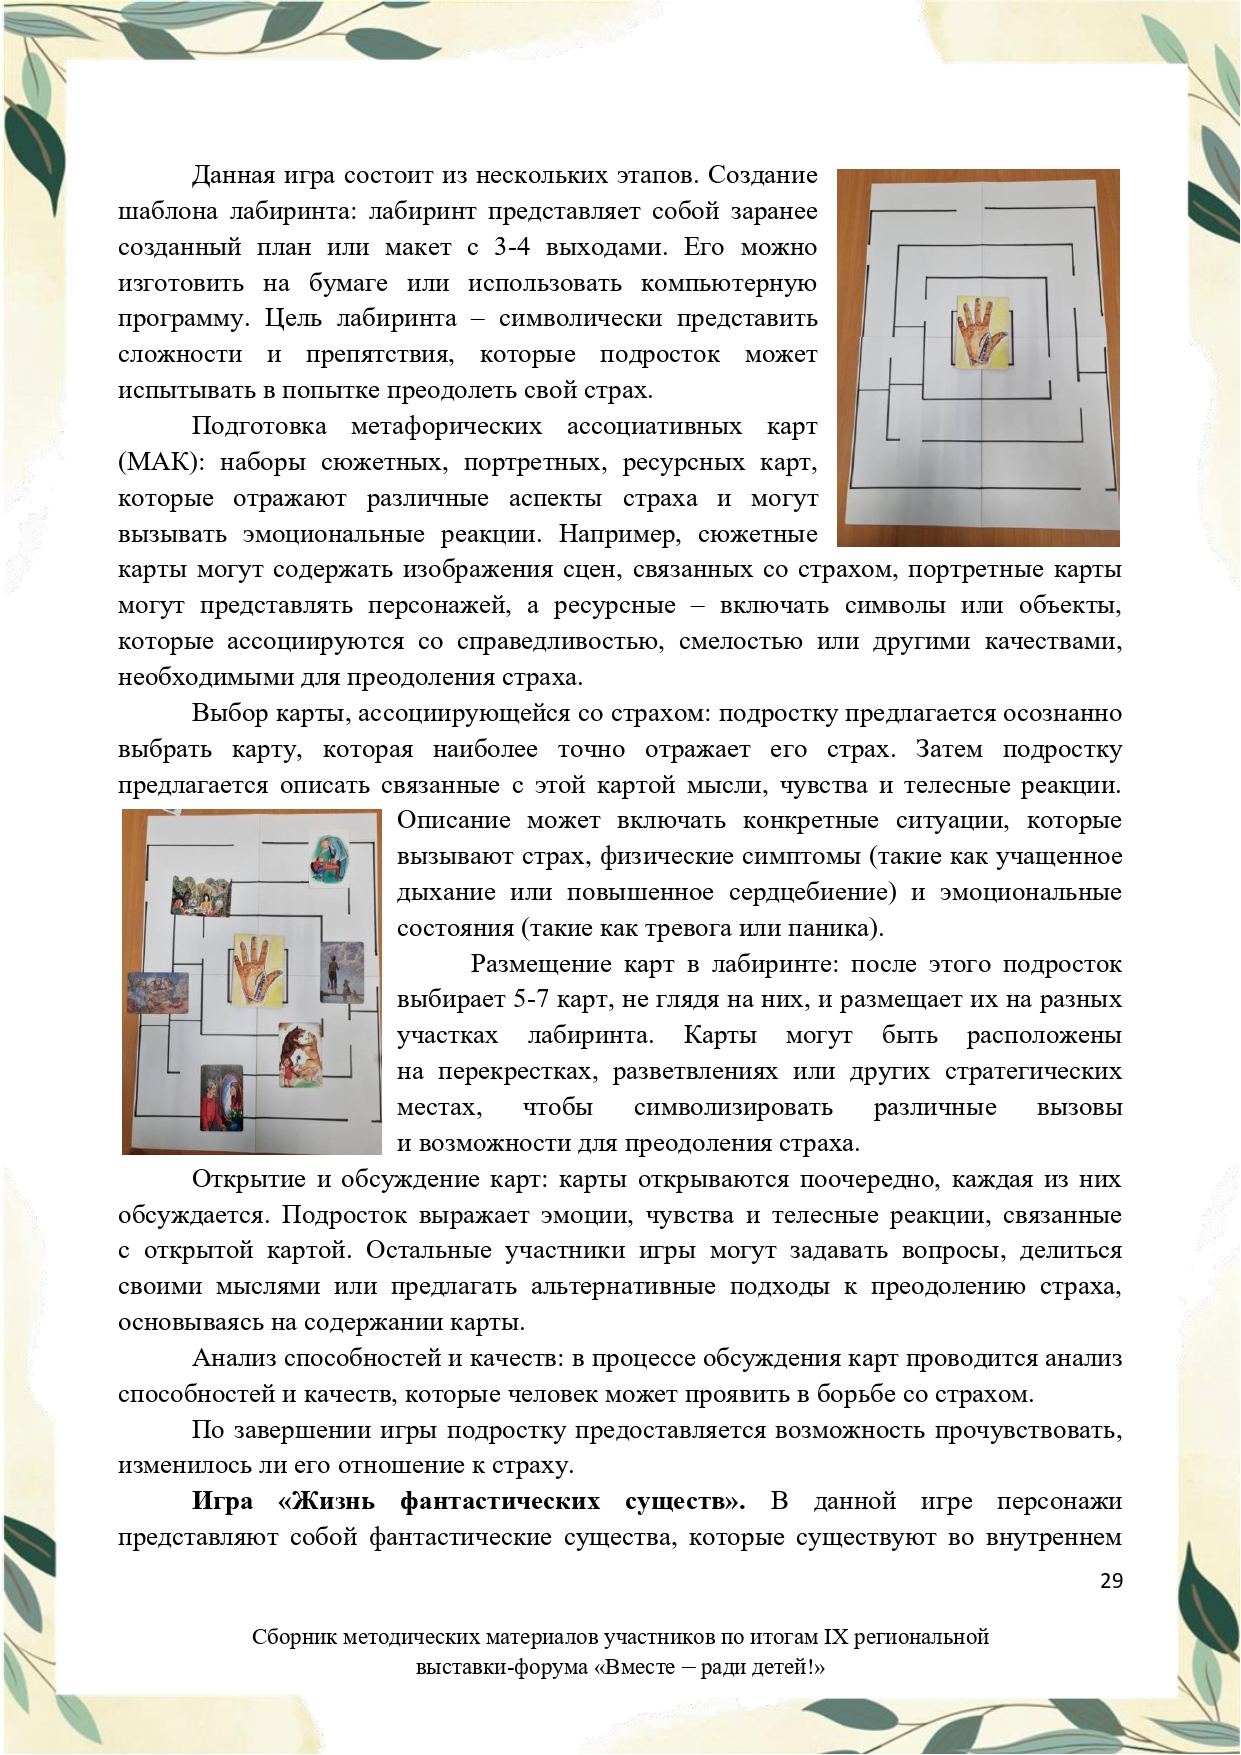 Sbornik_metodicheskikh_materialov_uchastnikov_IX_regionalnoy_vystavki-foruma_Vmeste__radi_detey_33__2023_page-0029